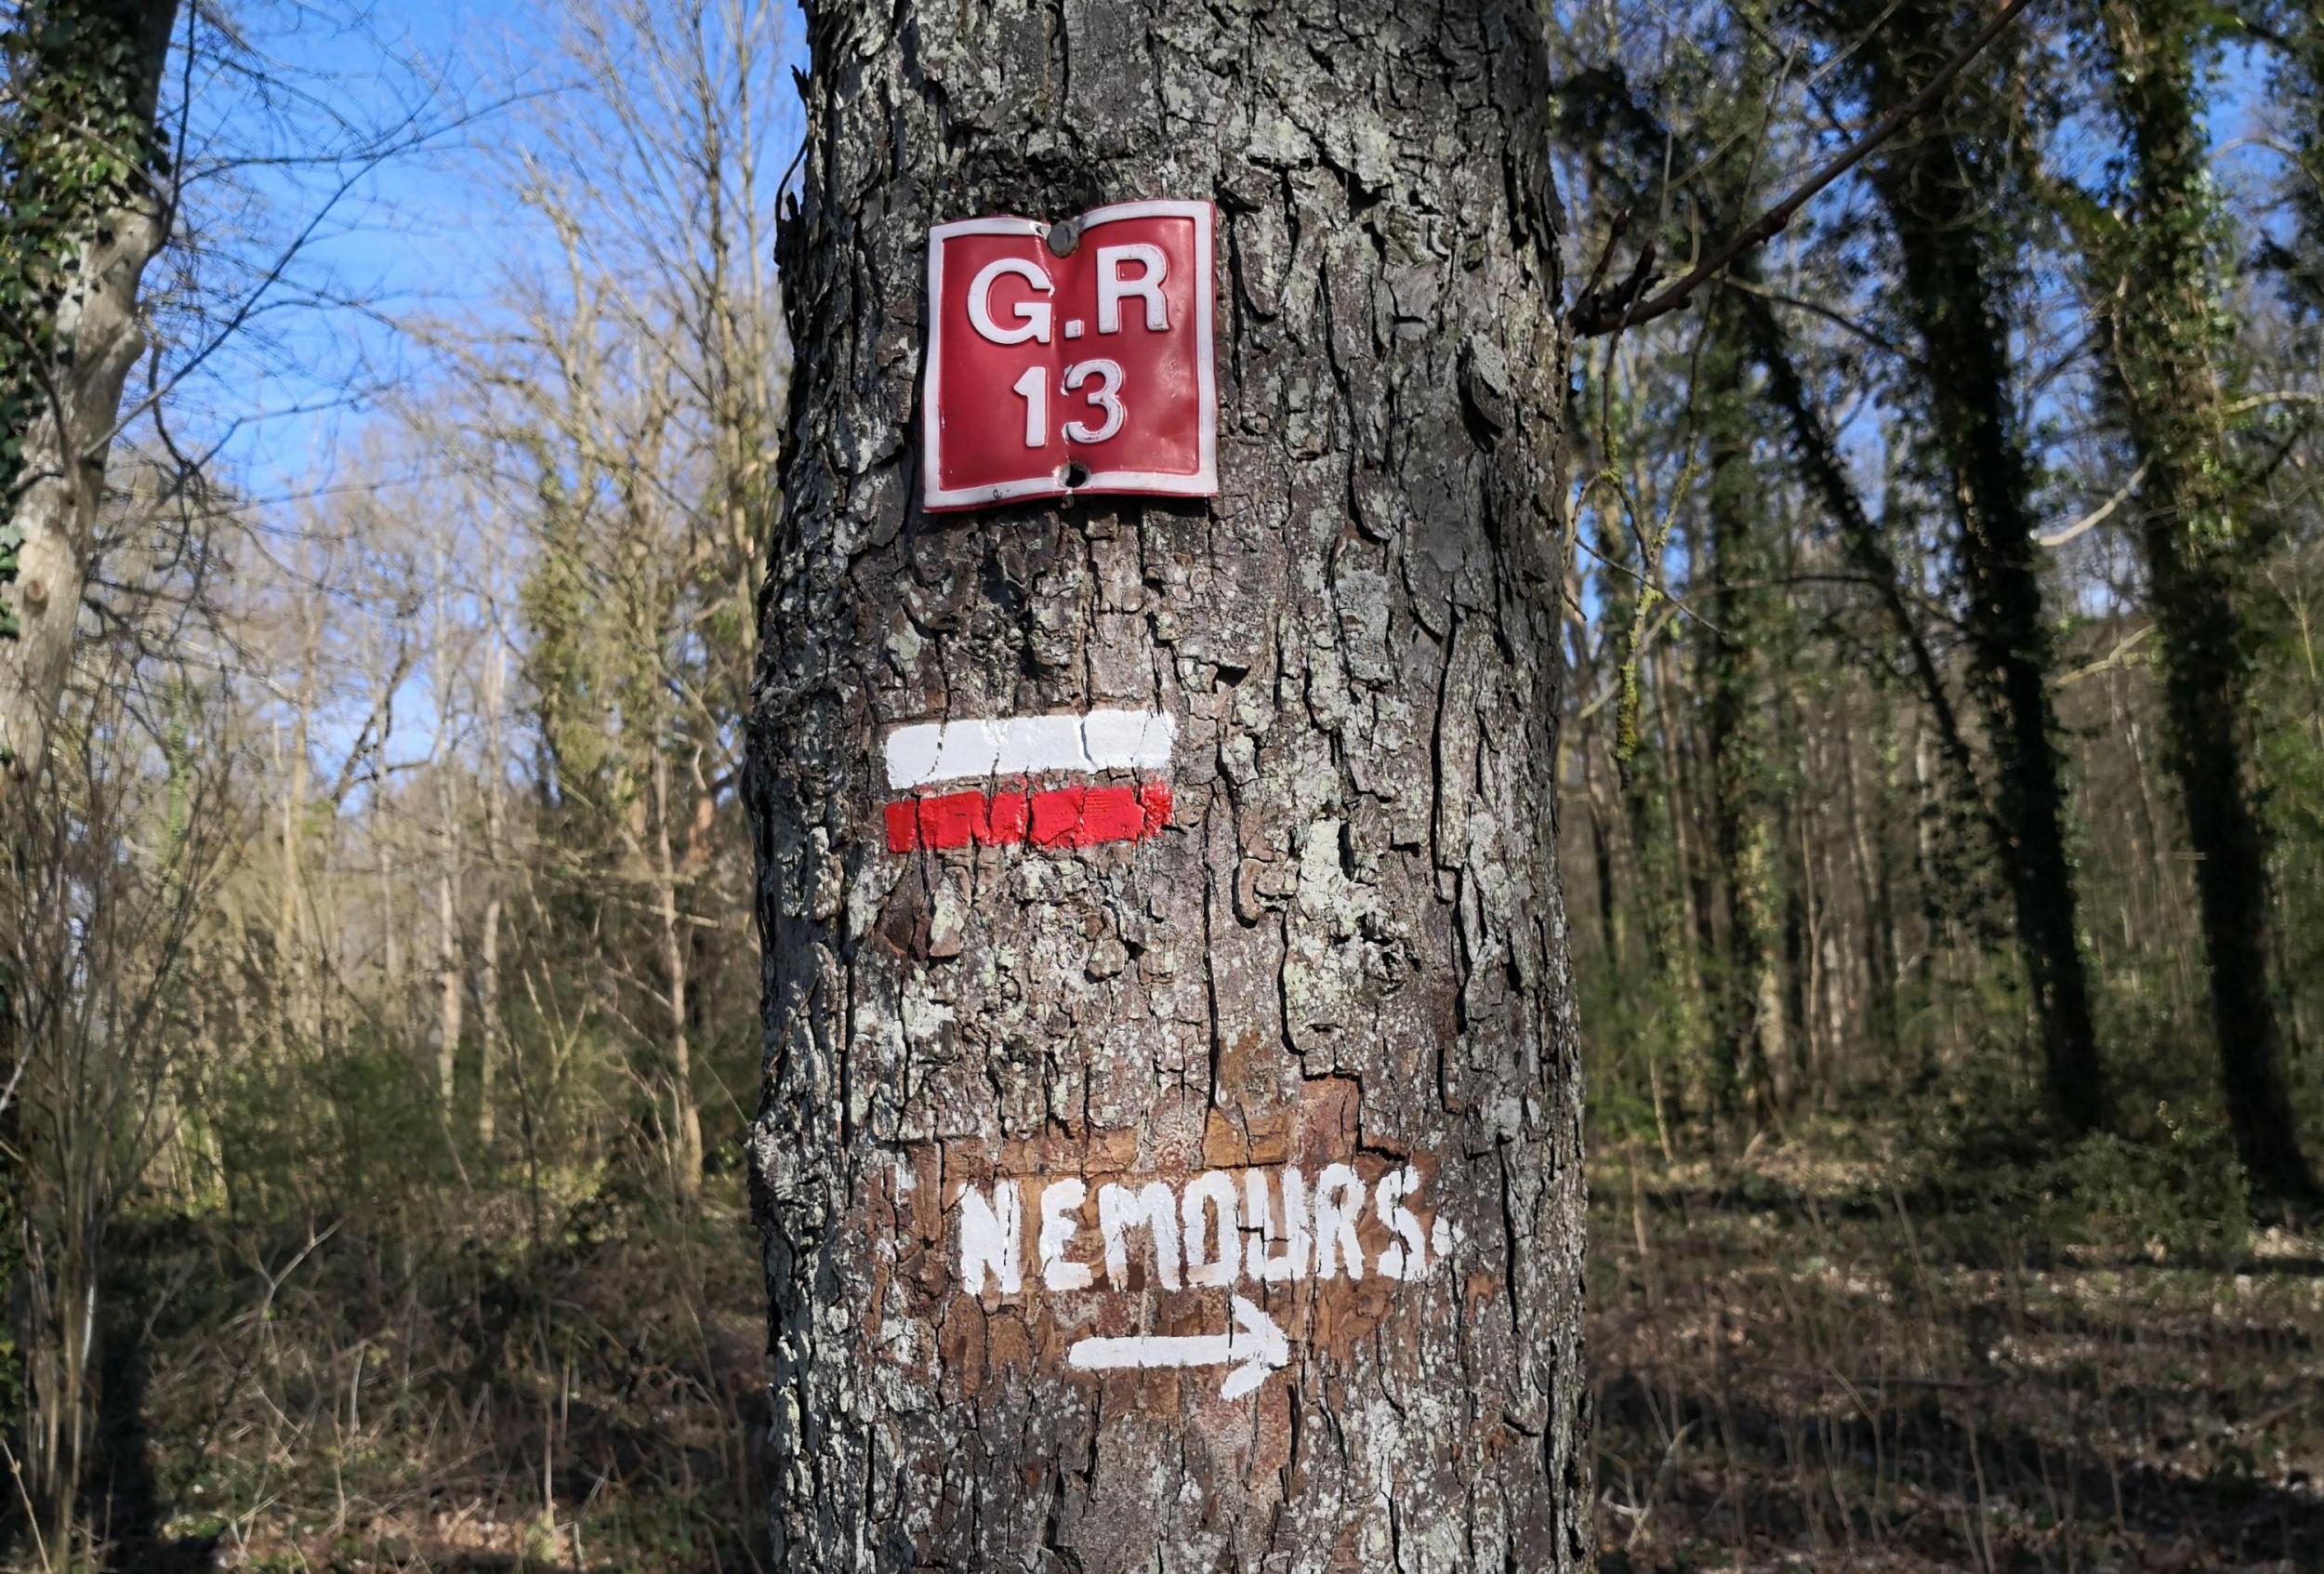 GR13 on arrive à Nemours